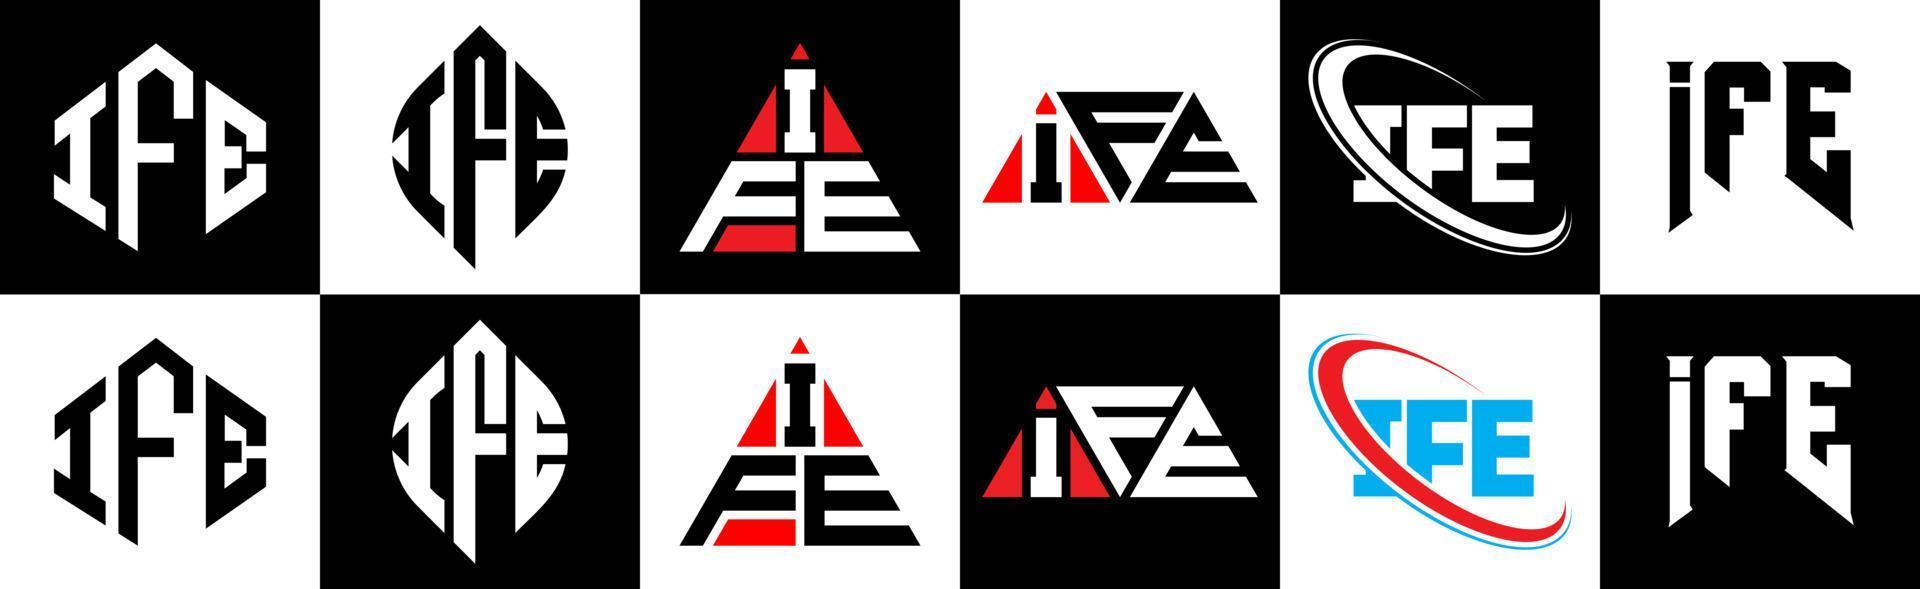 création de logo de lettre ife en six styles. ife polygone, cercle, triangle, hexagone, style plat et simple avec logo de lettre de variation de couleur noir et blanc dans un plan de travail. ife logo minimaliste et classique vecteur